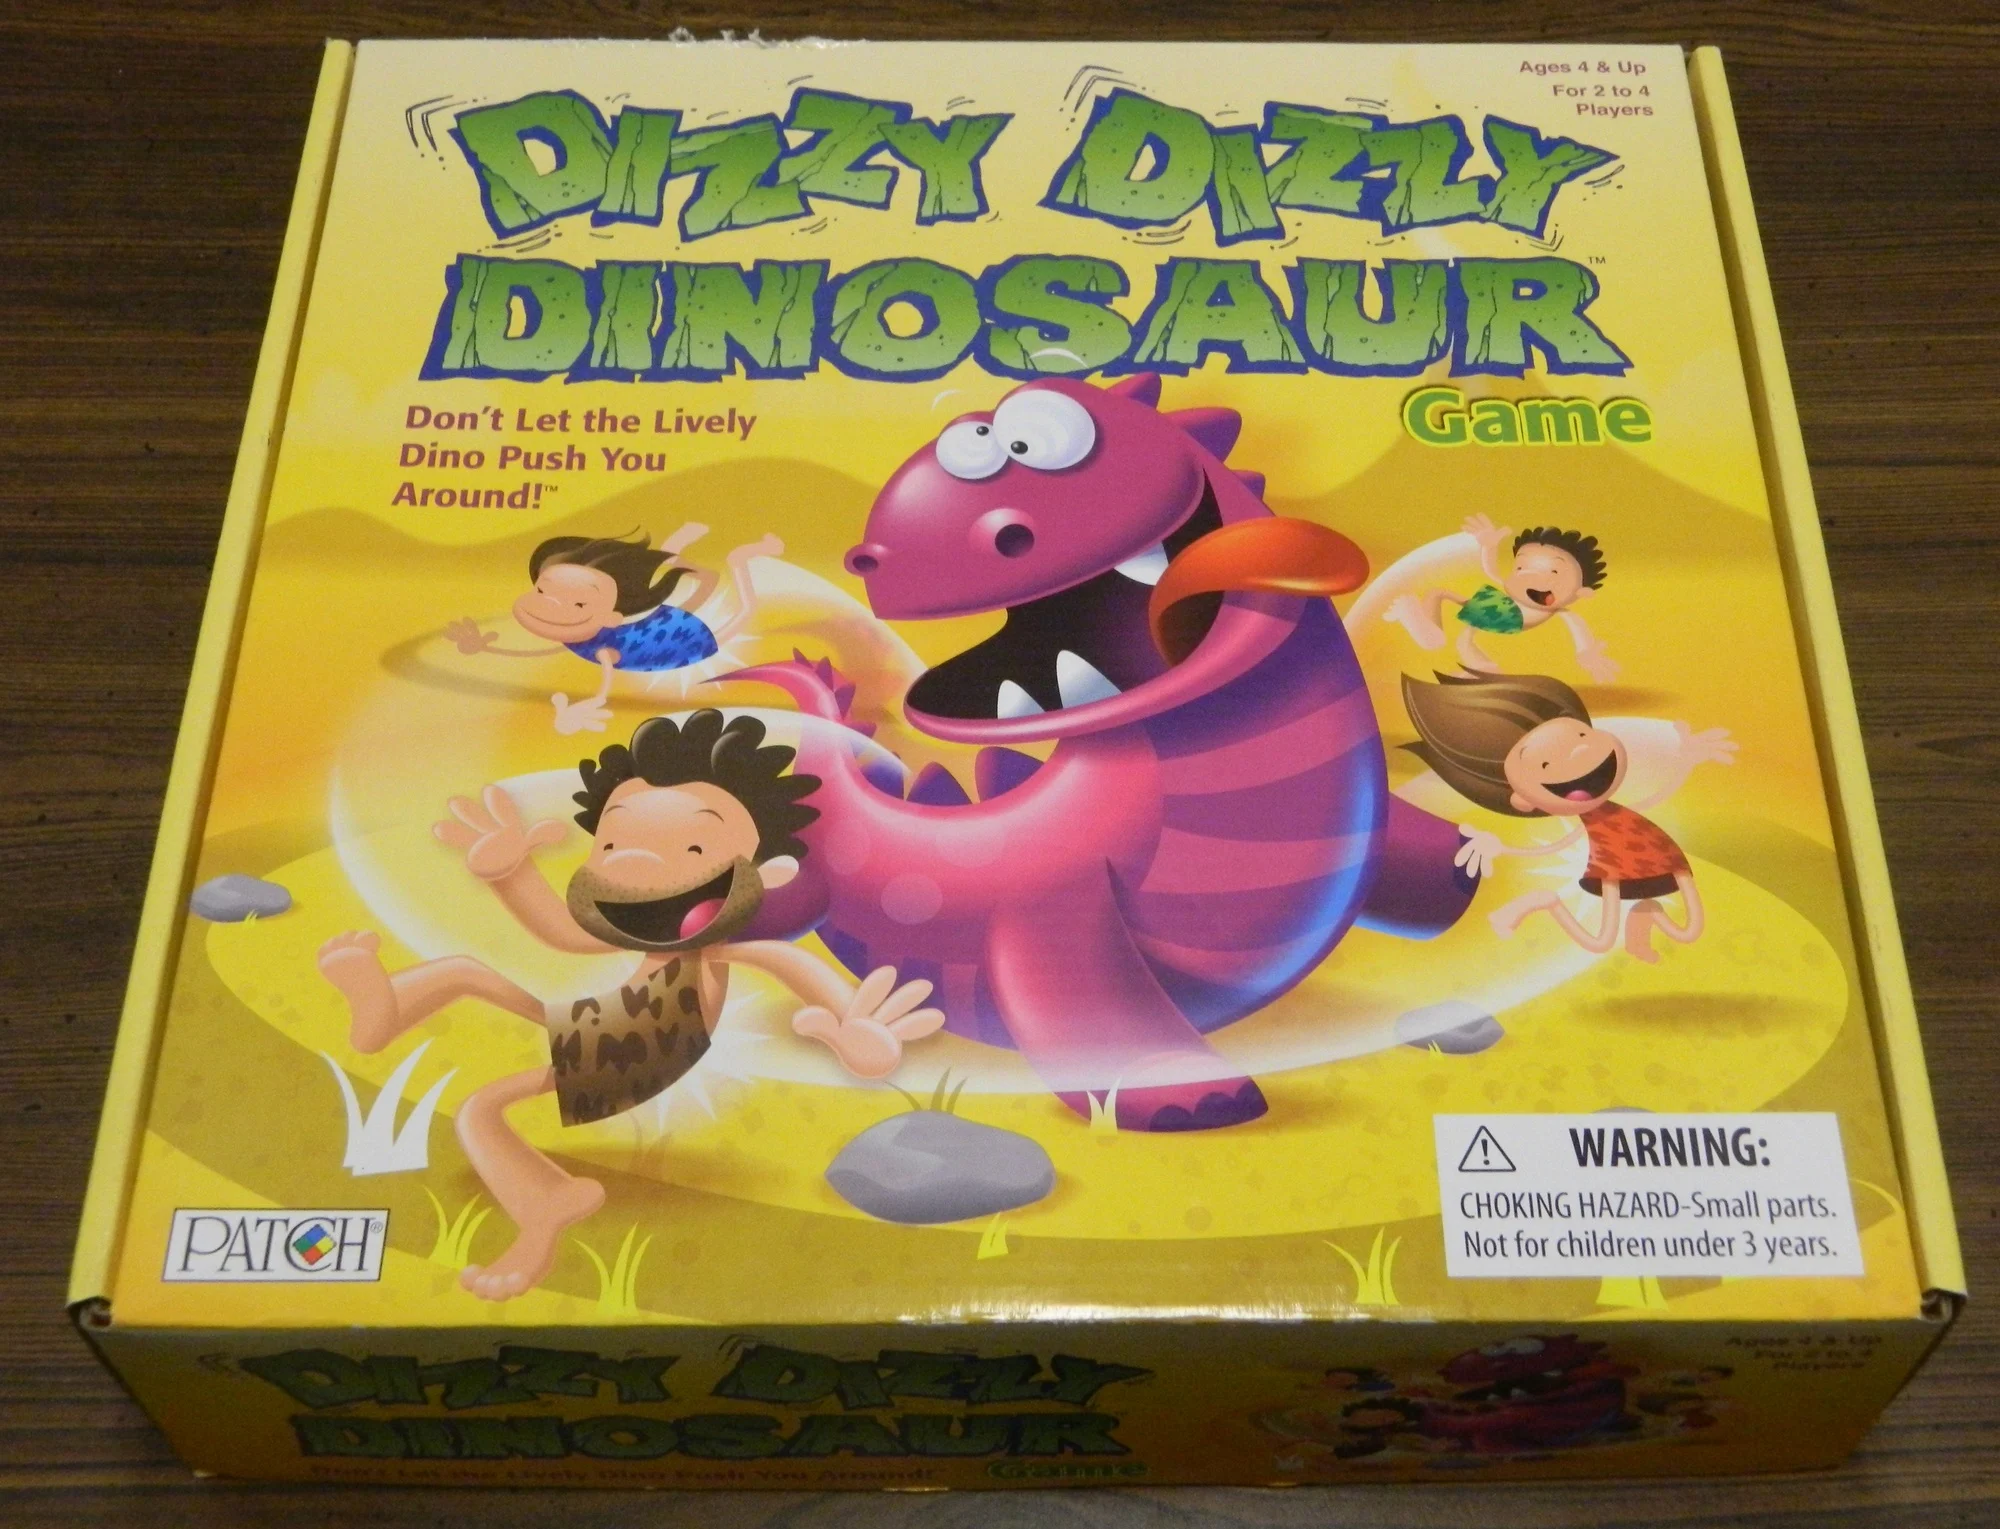 Box for Dizzy Dizzy Dinosaur